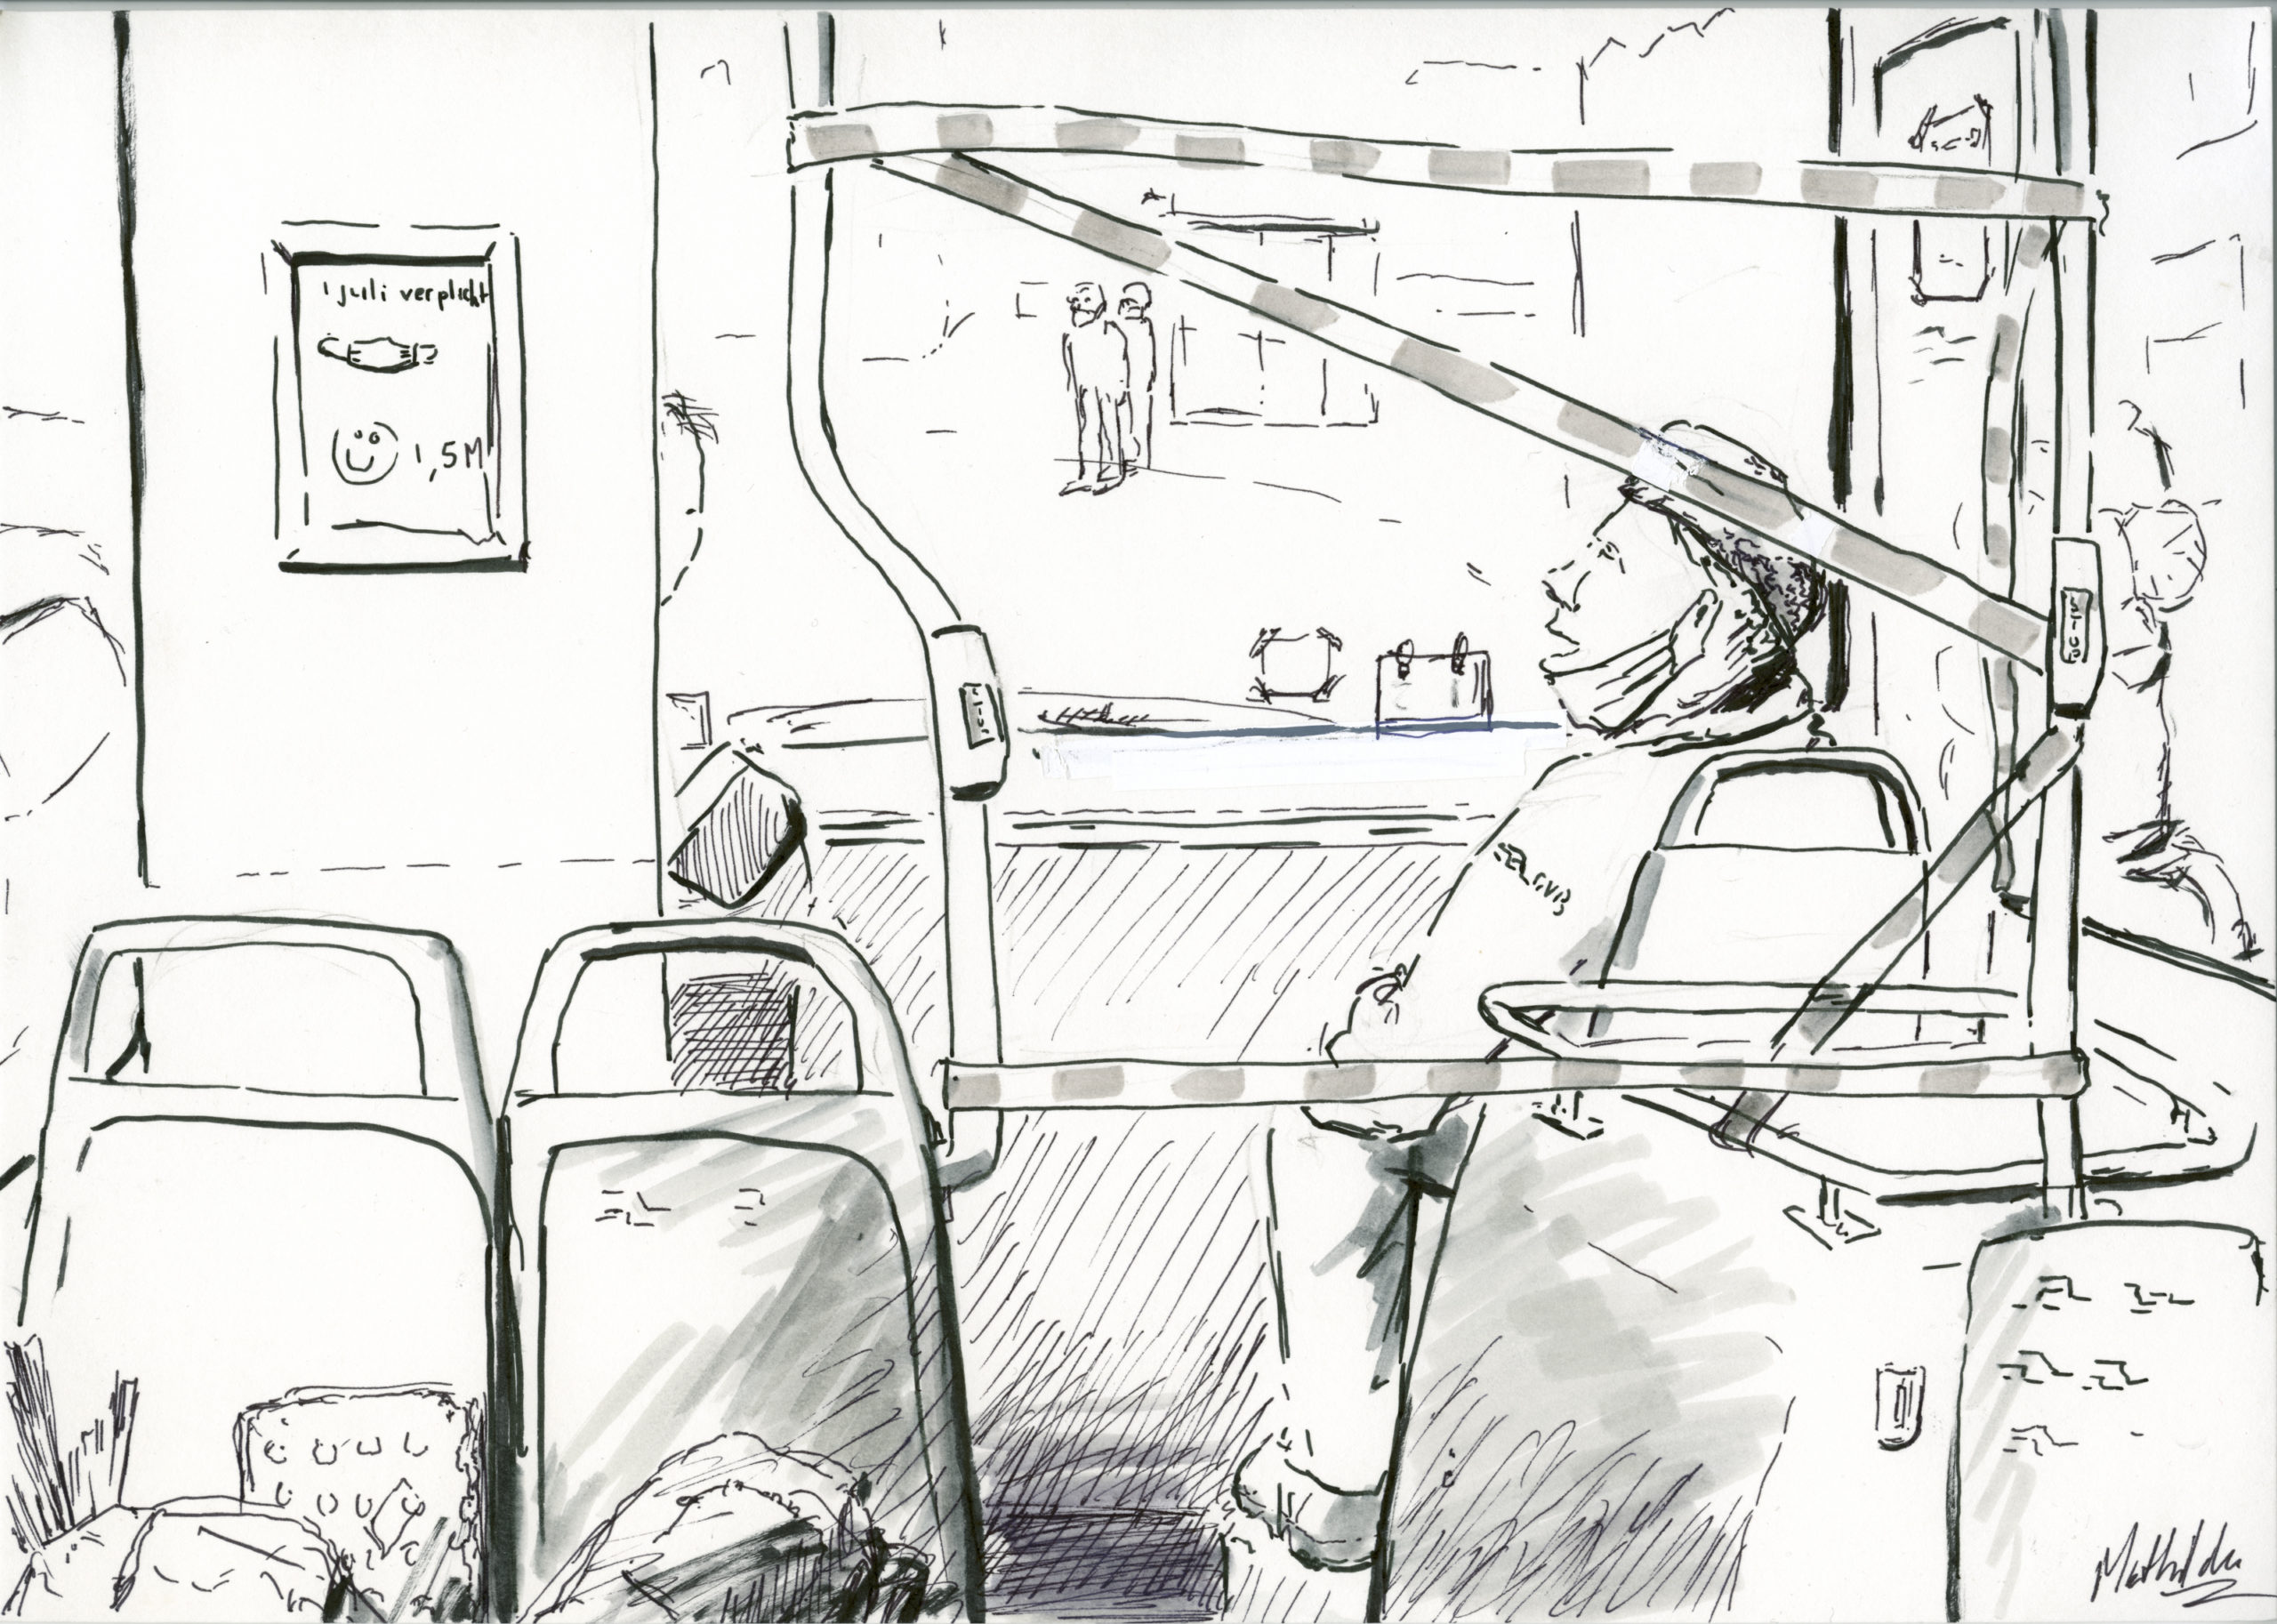 Tekening van buschaufeur in gesprek met collega, door Mathilde muPe